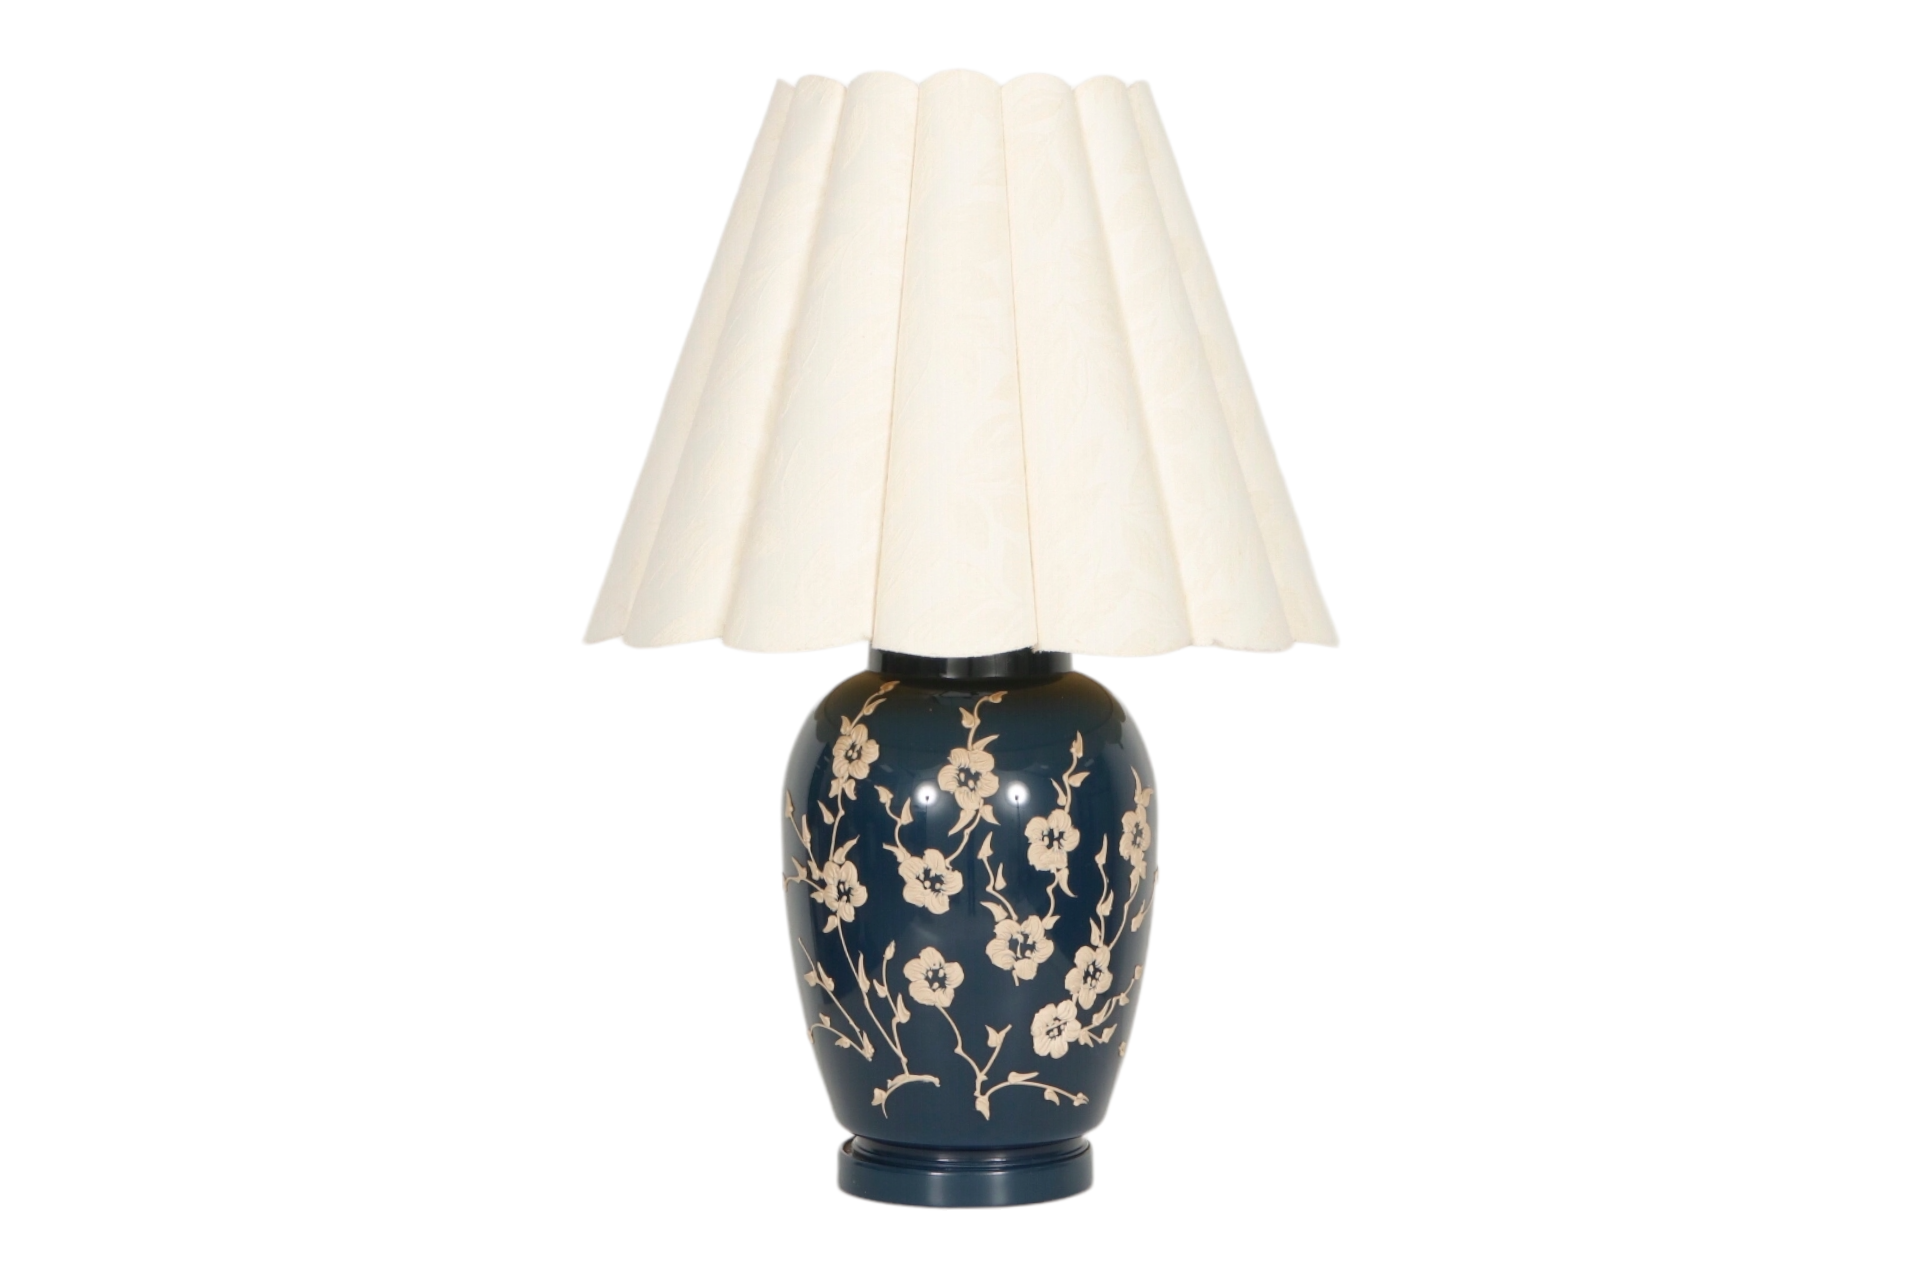 Floral Ceramic Table Lamp in Blue & Tan~P77659647